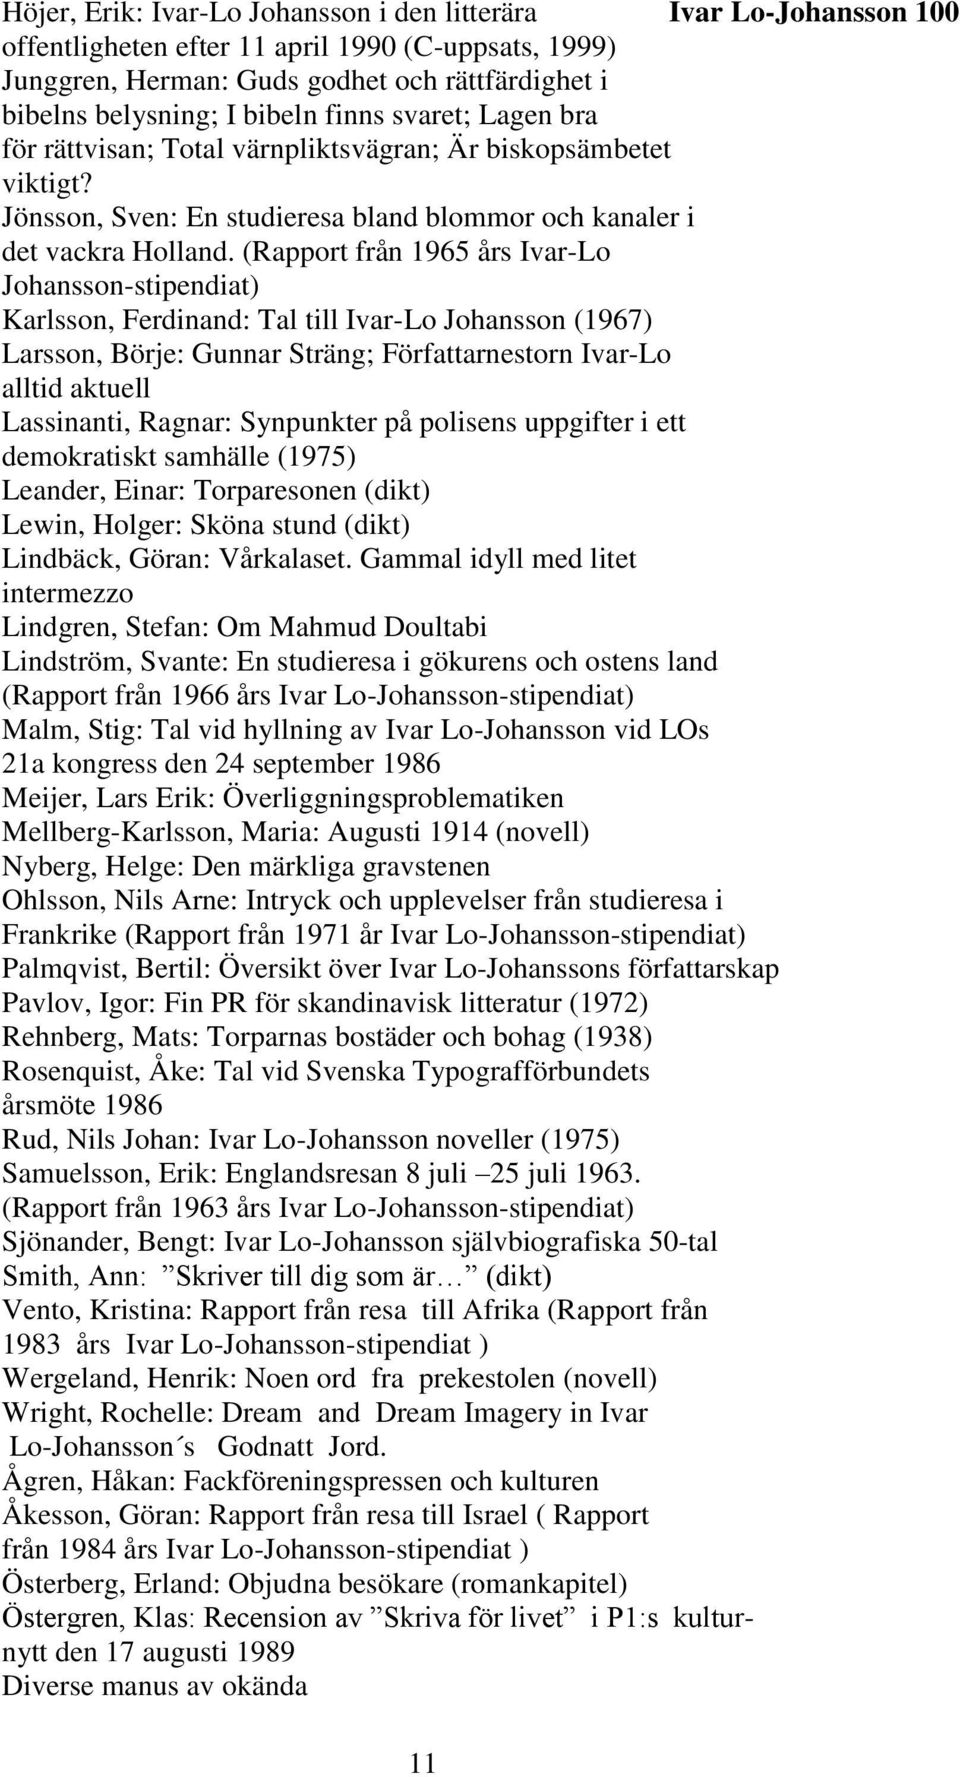 (Rapport från 1965 års Ivar-Lo Johansson-stipendiat) Karlsson, Ferdinand: Tal till Ivar-Lo Johansson (1967) Larsson, Börje: Gunnar Sträng; Författarnestorn Ivar-Lo alltid aktuell Lassinanti, Ragnar: